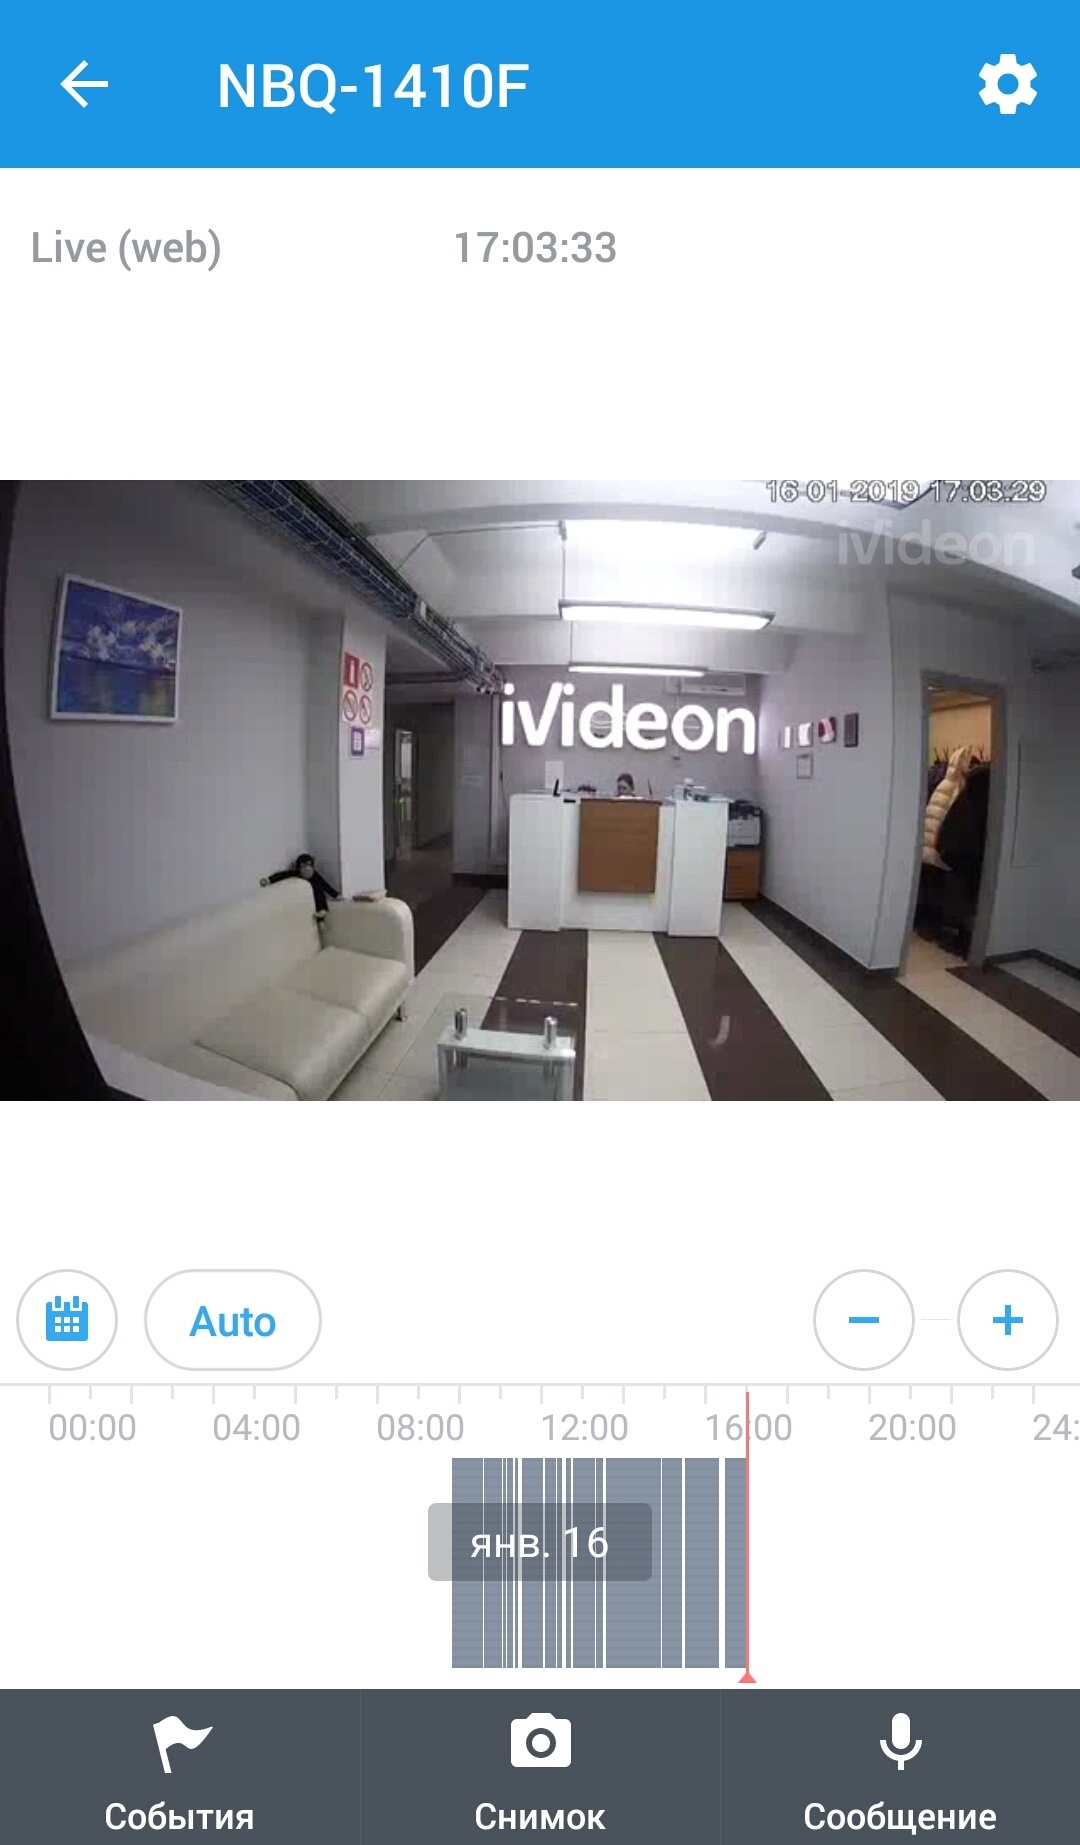 Как устроена система видеонаблюдения Ivideon: обзор мобильного приложения - 7